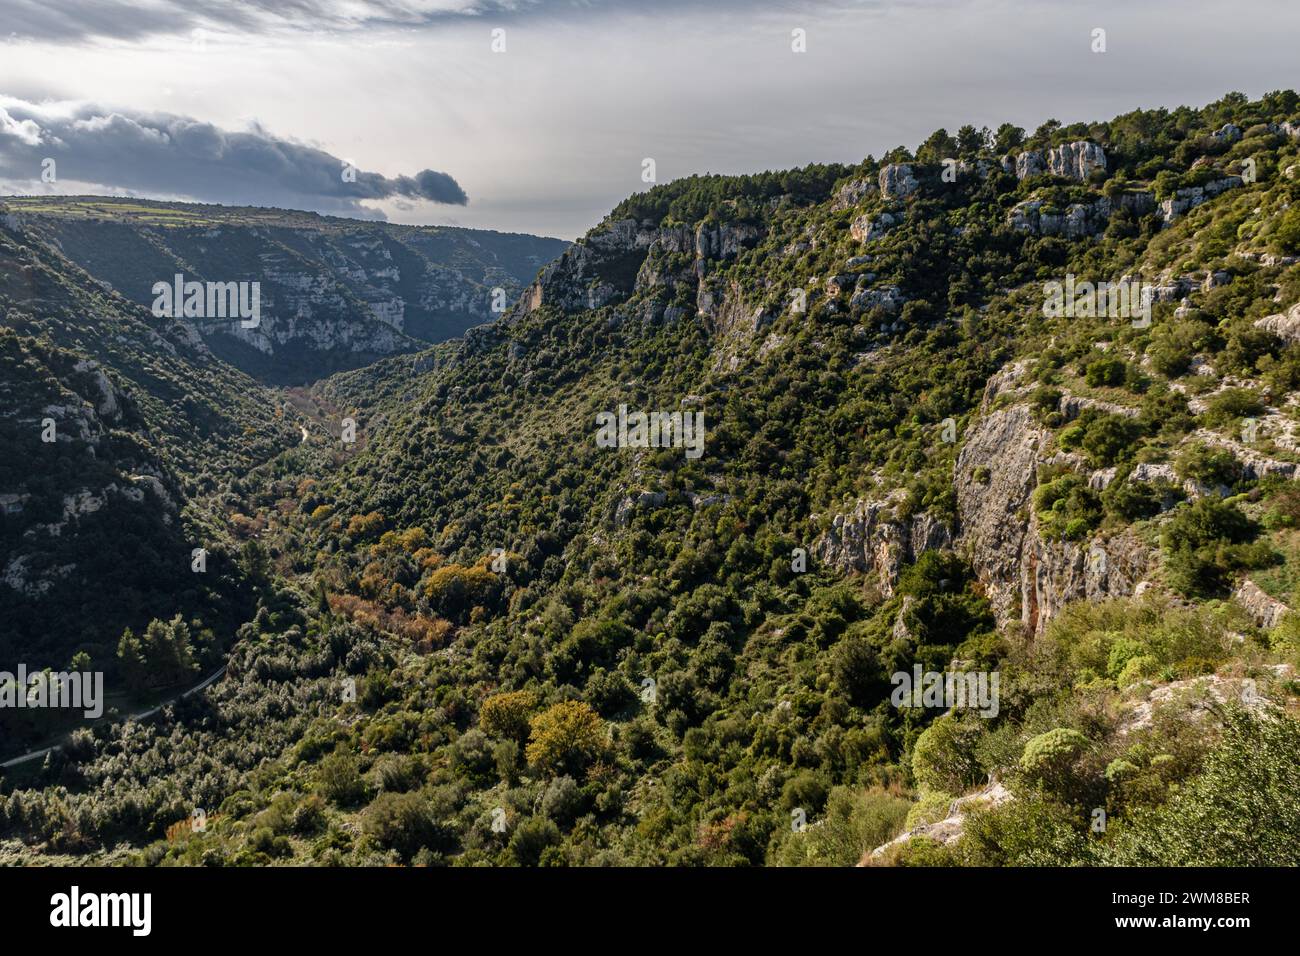 Vista panoramica della valle Anapo e l'altopiano di Pantalica vicino a Siracusa, in Sicilia Foto Stock